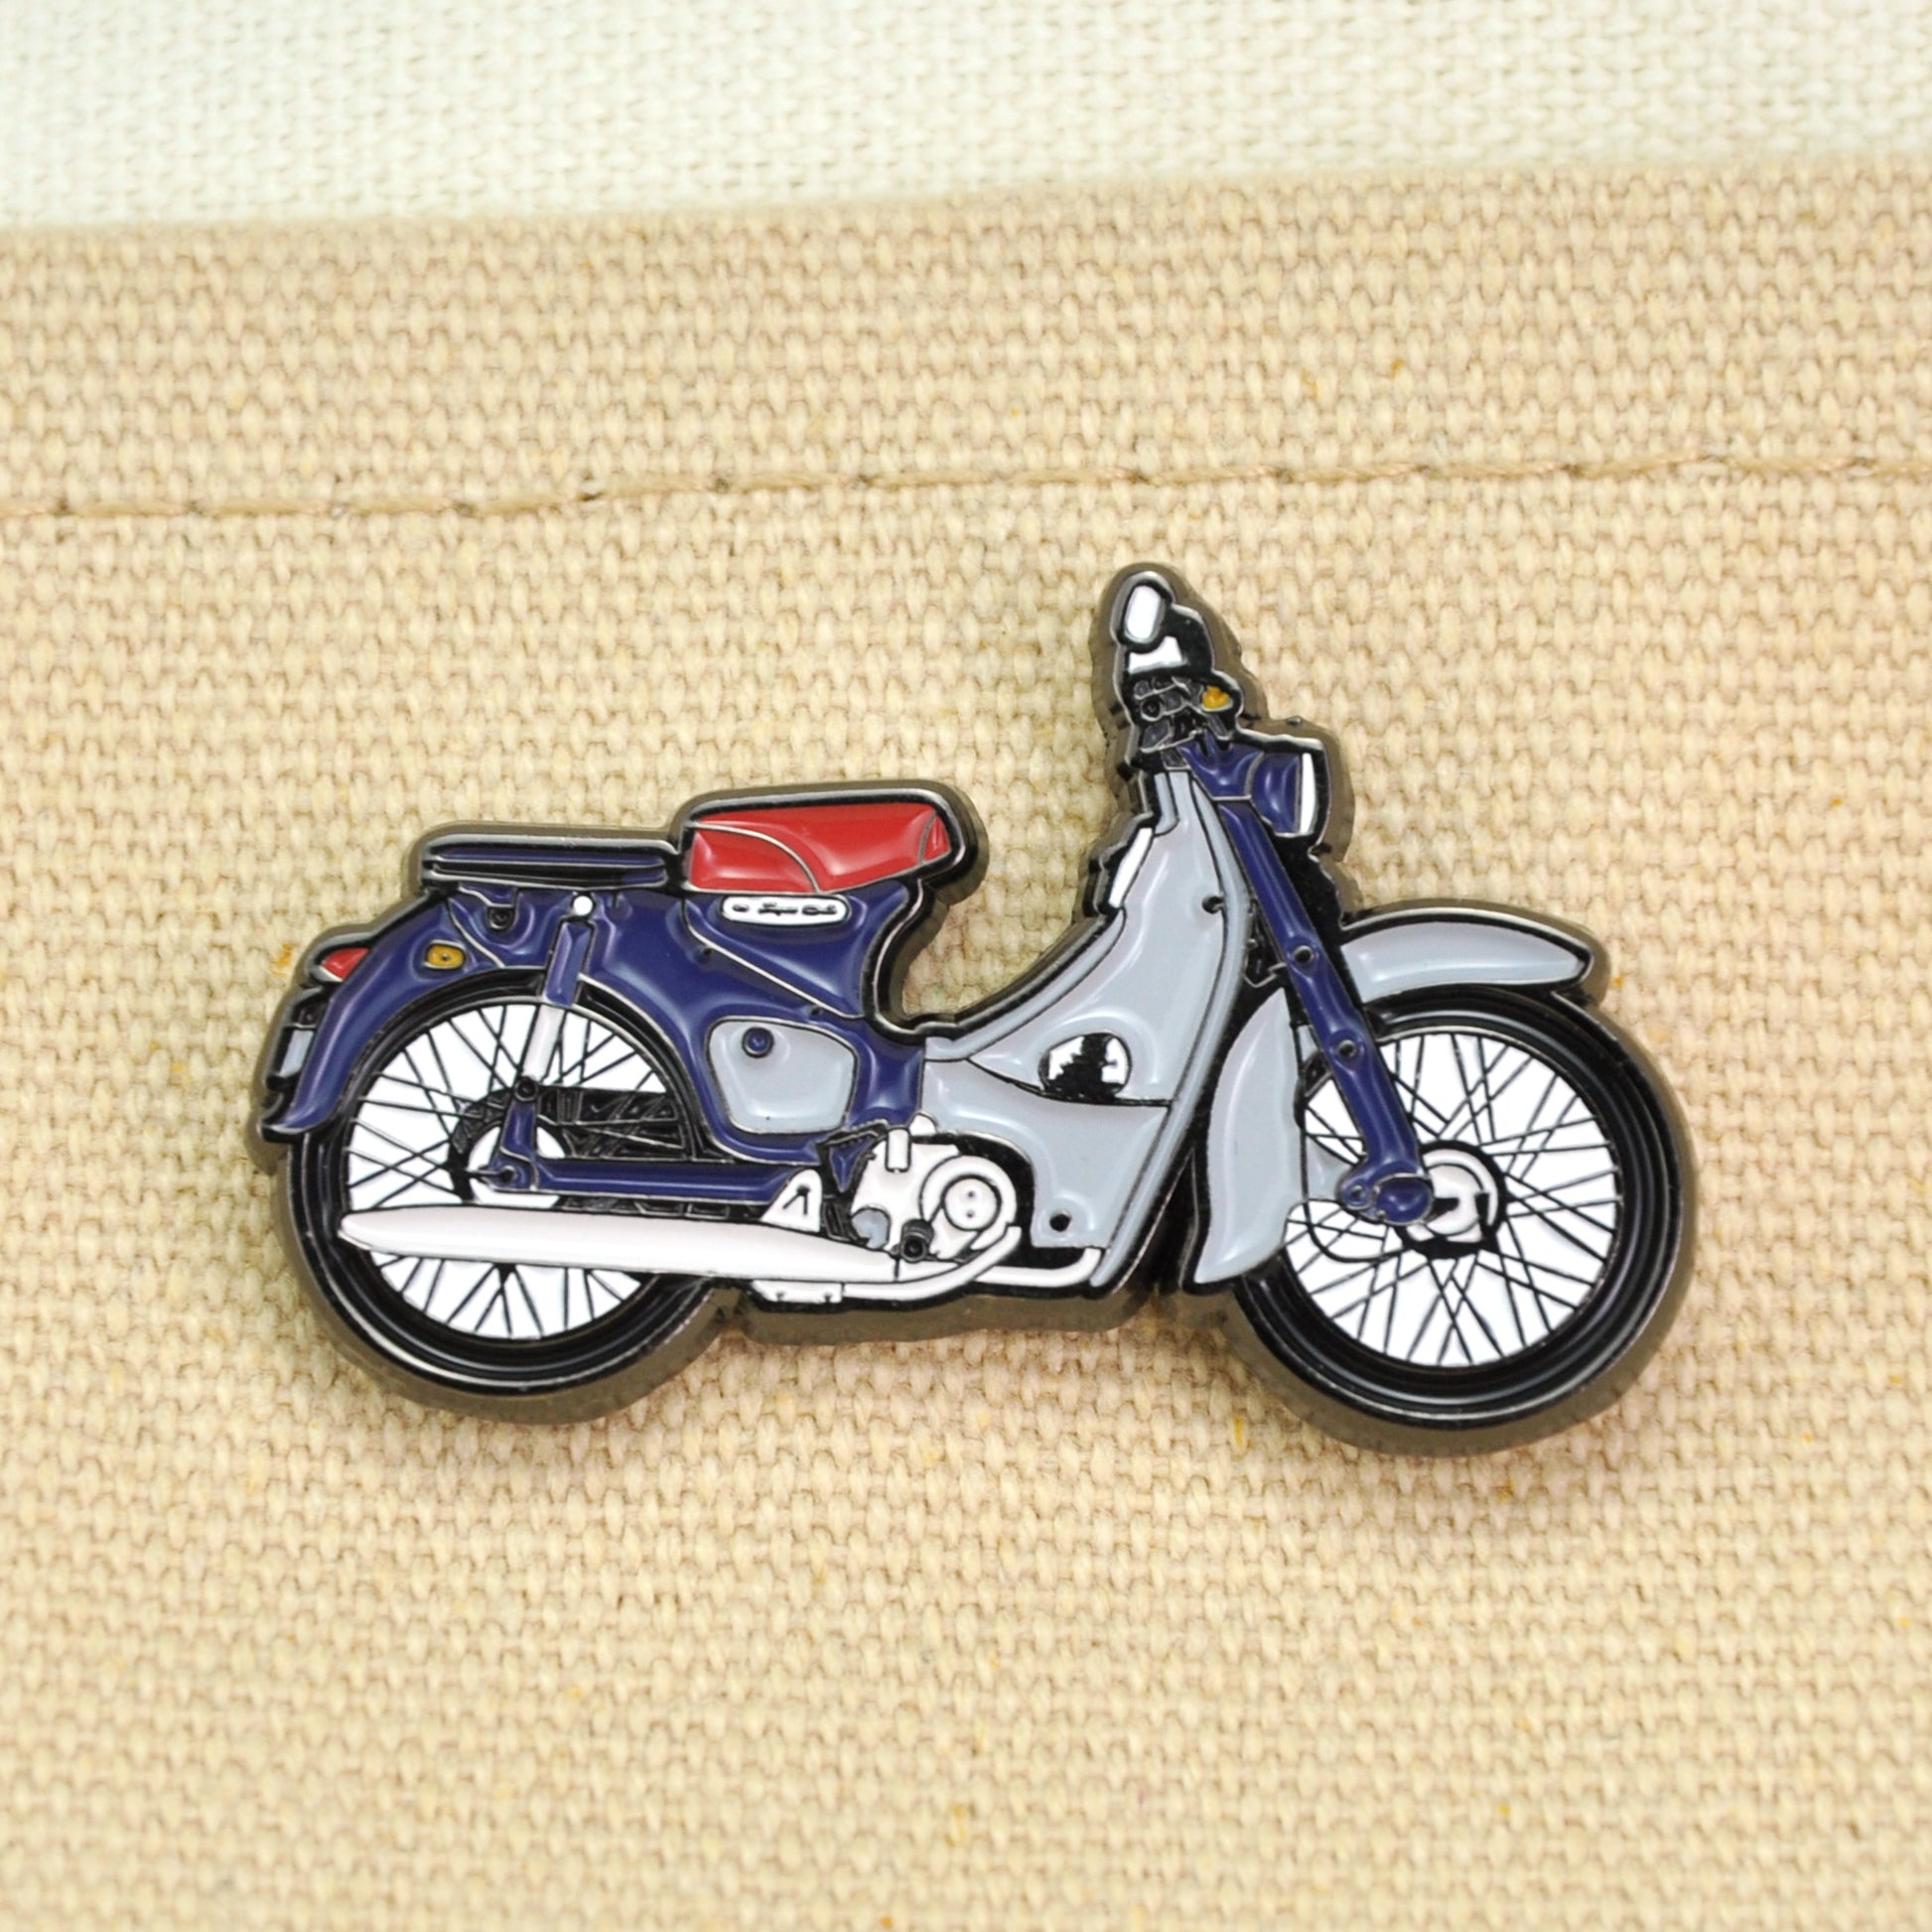 Honda-Super-Cub-Motorcycle-Enamel-Pin-Badge-Lapel